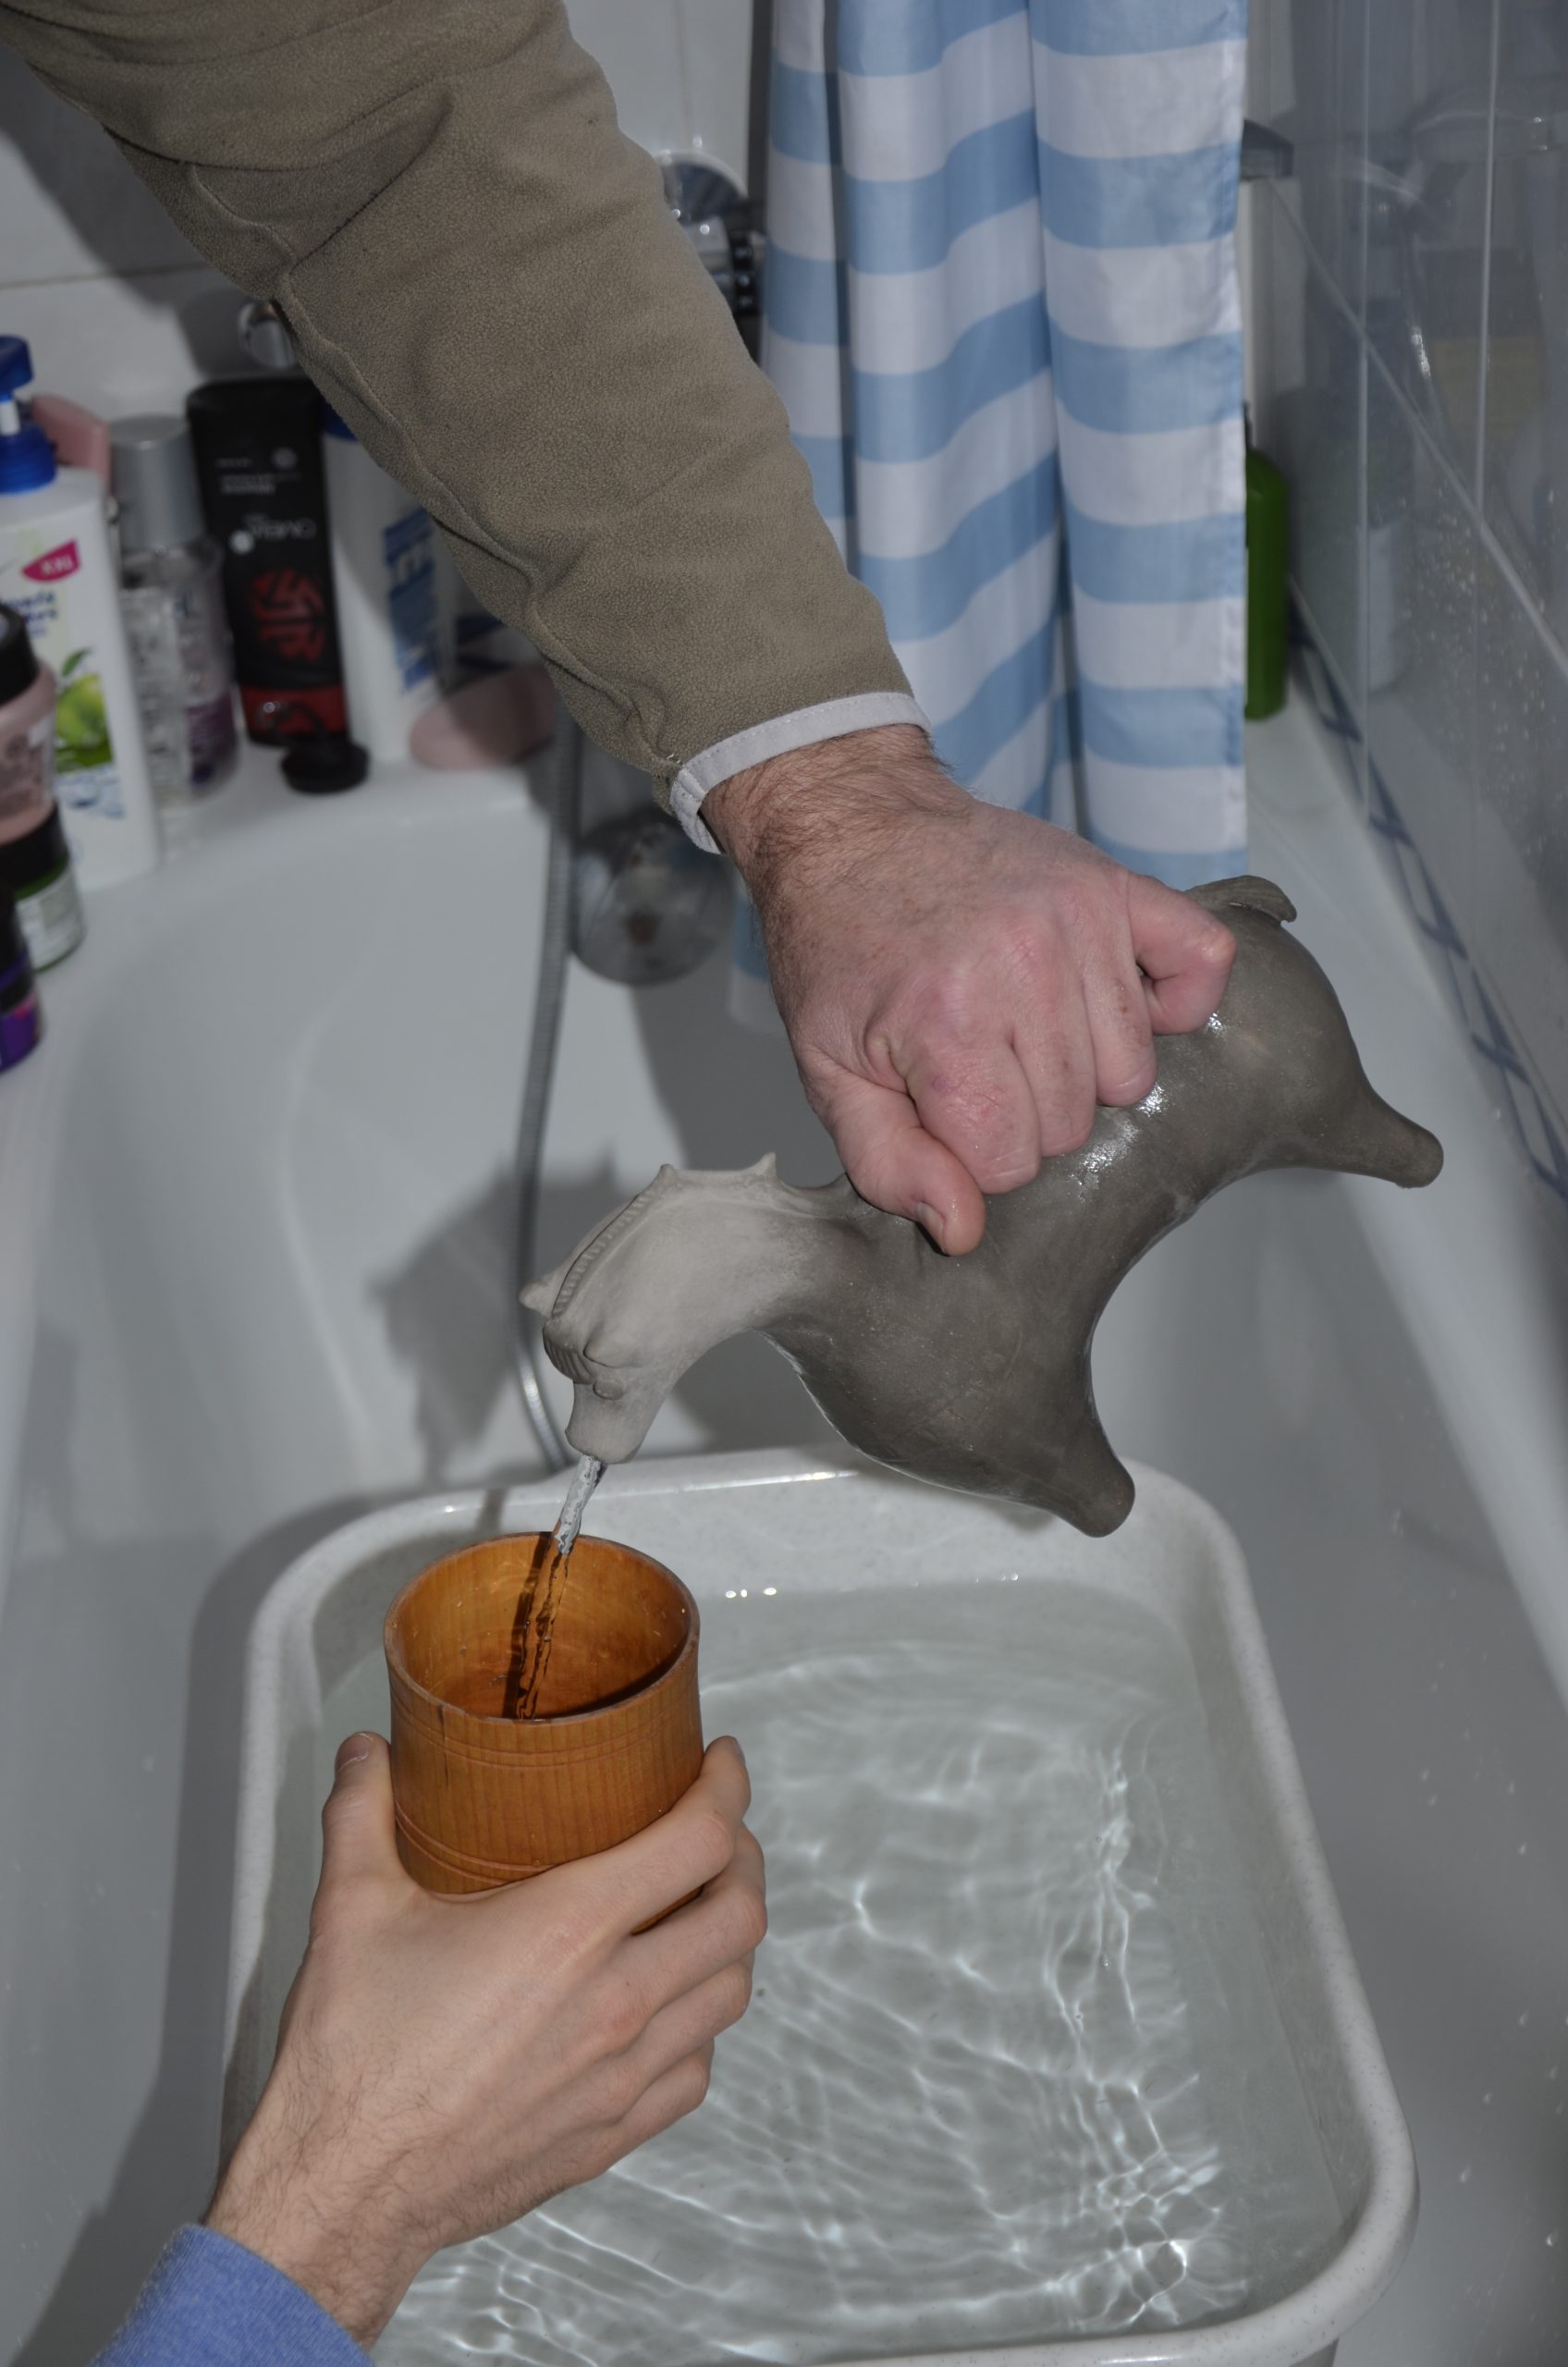 Abb. 16: Befüllen eines Bechers mittels des Keramik-Aquamanile durch eine Person. Foto: Thomas Kühtreiber.